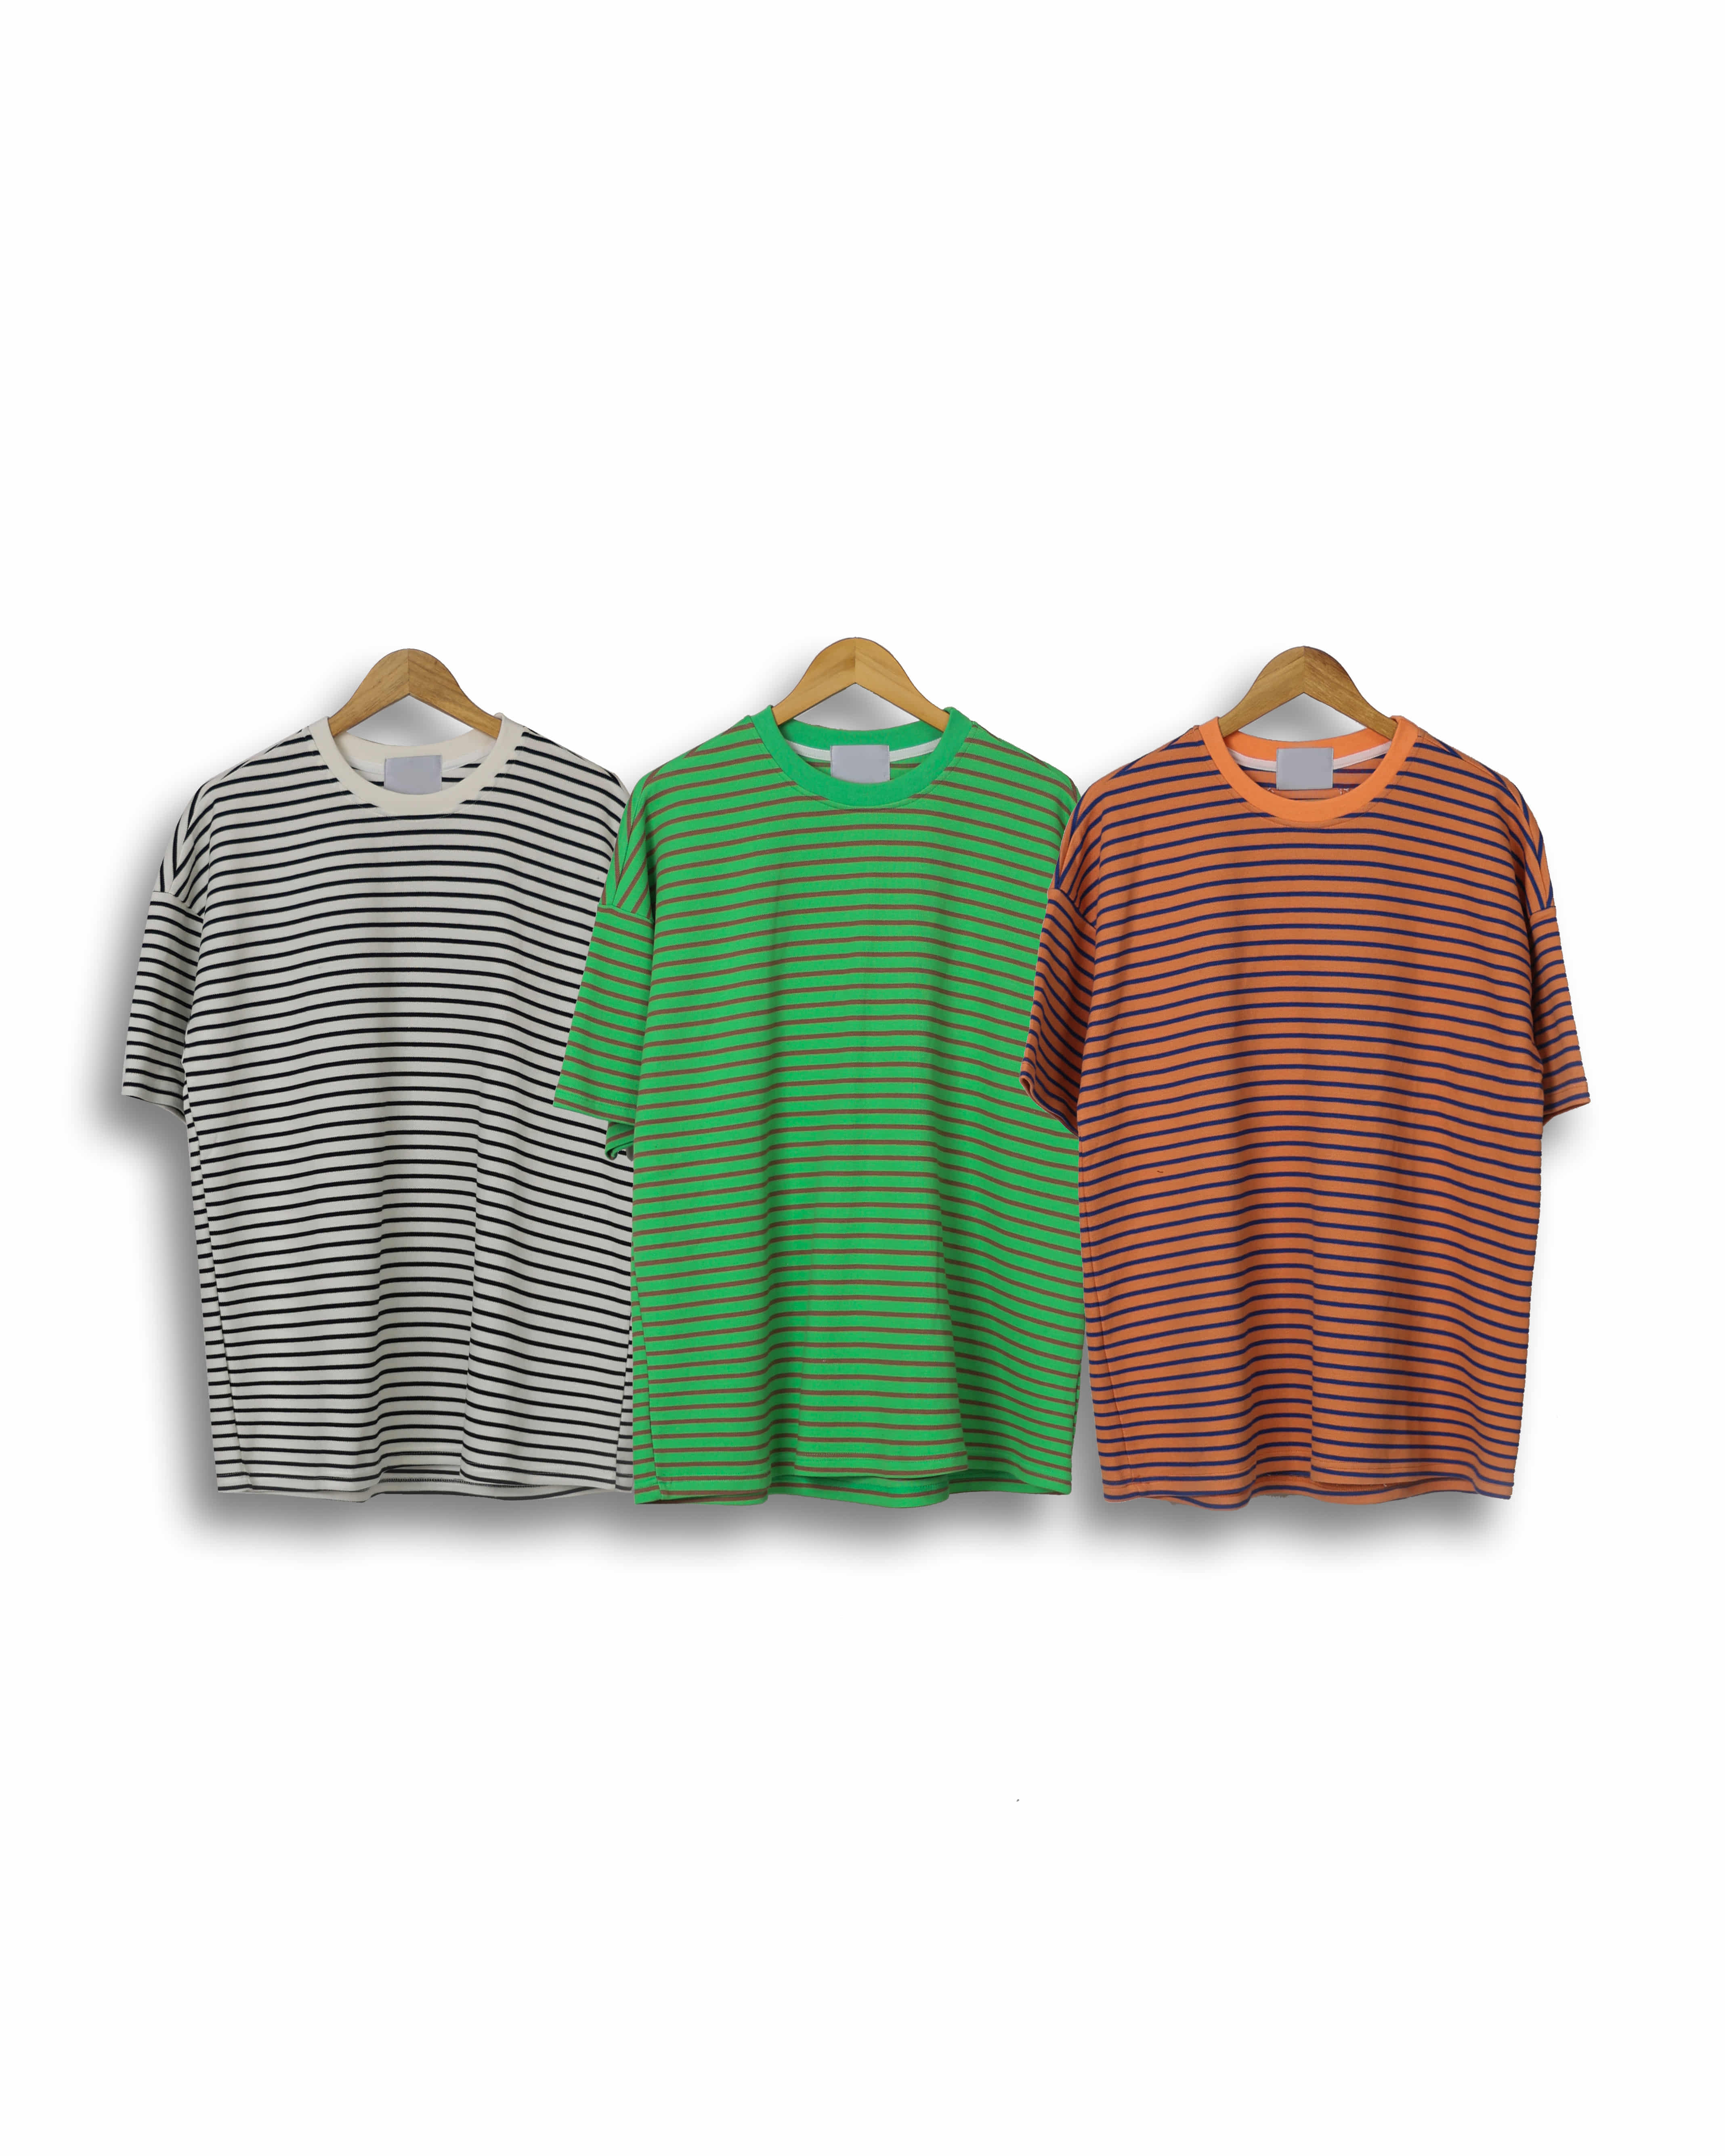 IVA Stripe Basic Loose T Shirts (Green/Orange/Ivory)